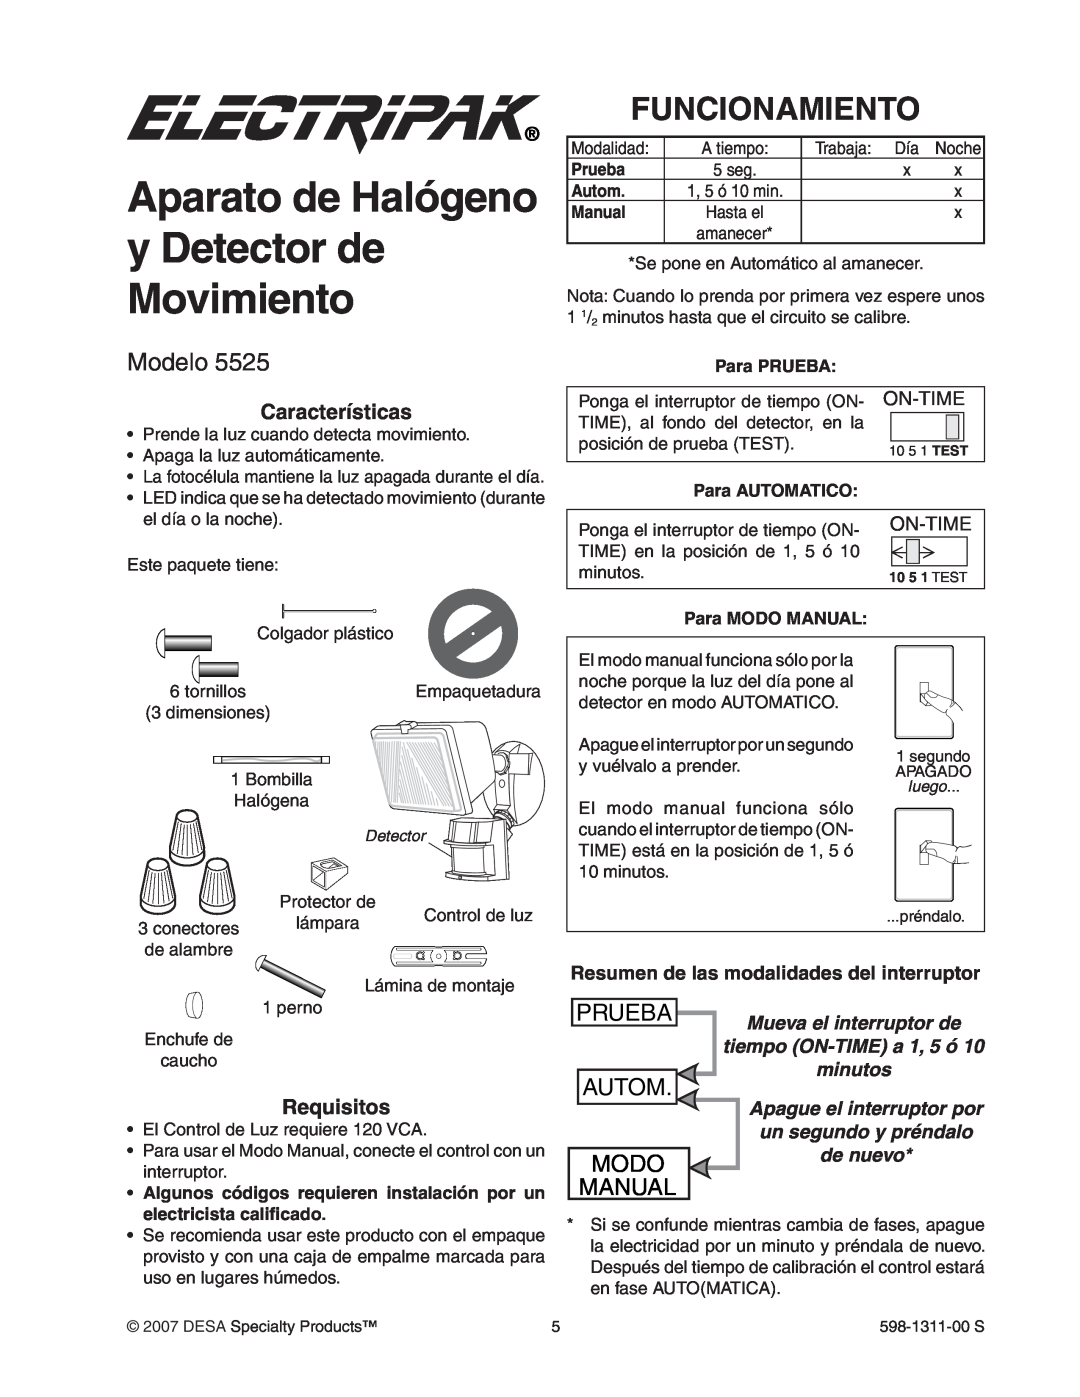 Desa 5525 manual Aparato de Halógeno y Detector de Movimiento, Funcionamiento, Modelo, Prueba, Autom Modo Manual, On-Time 